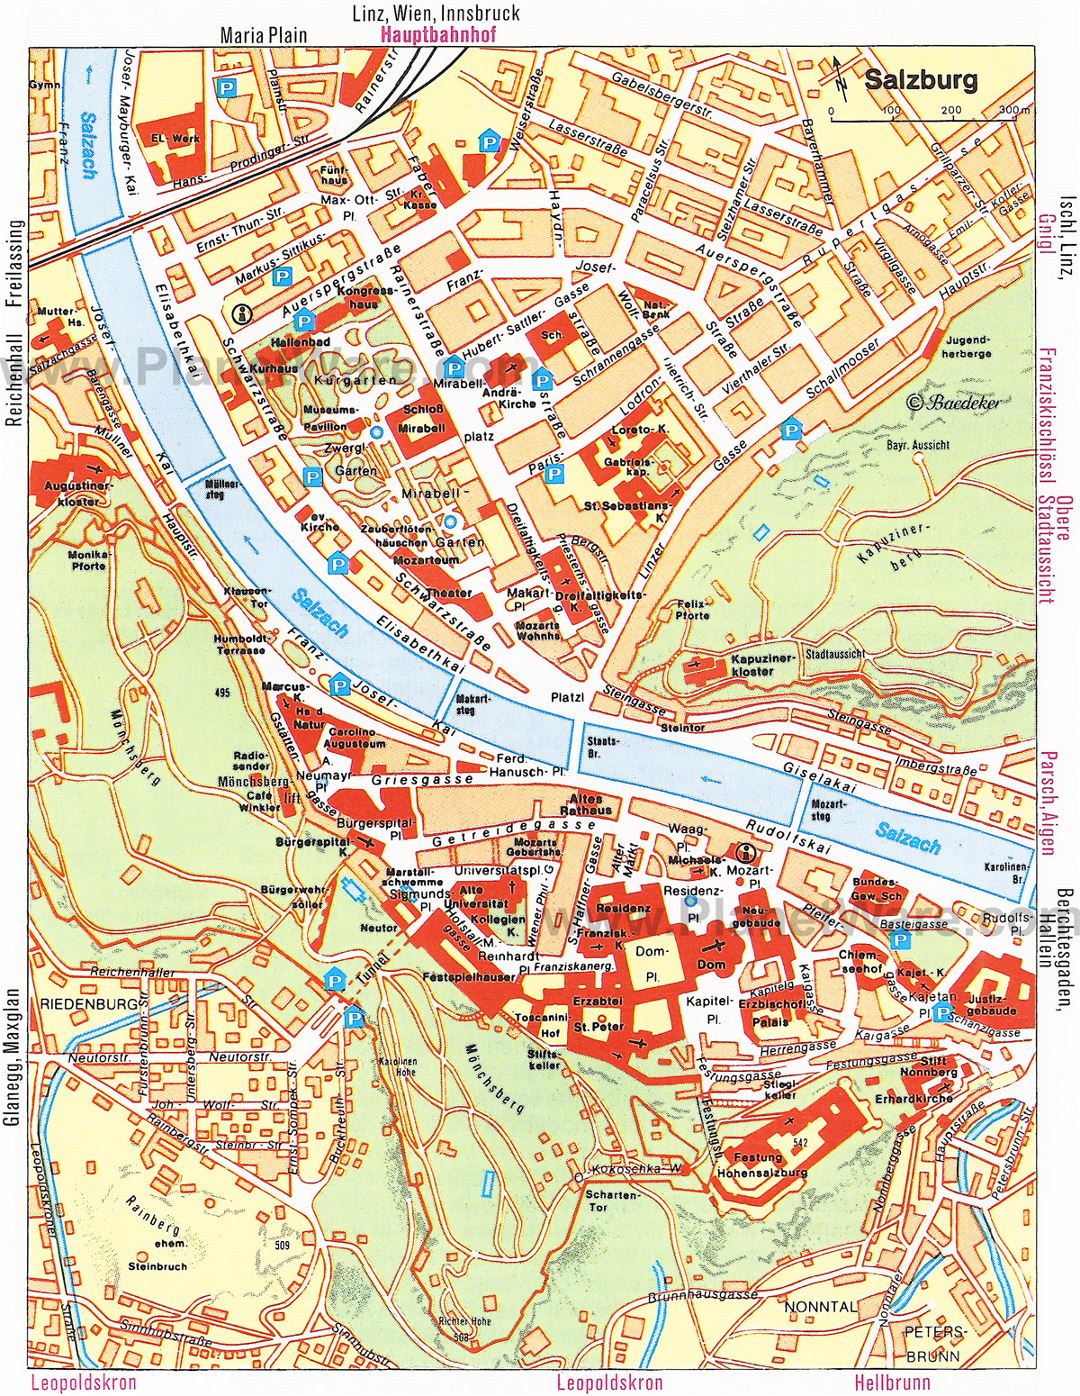 Mapa turístico del centro de la ciudad de Salzburgo